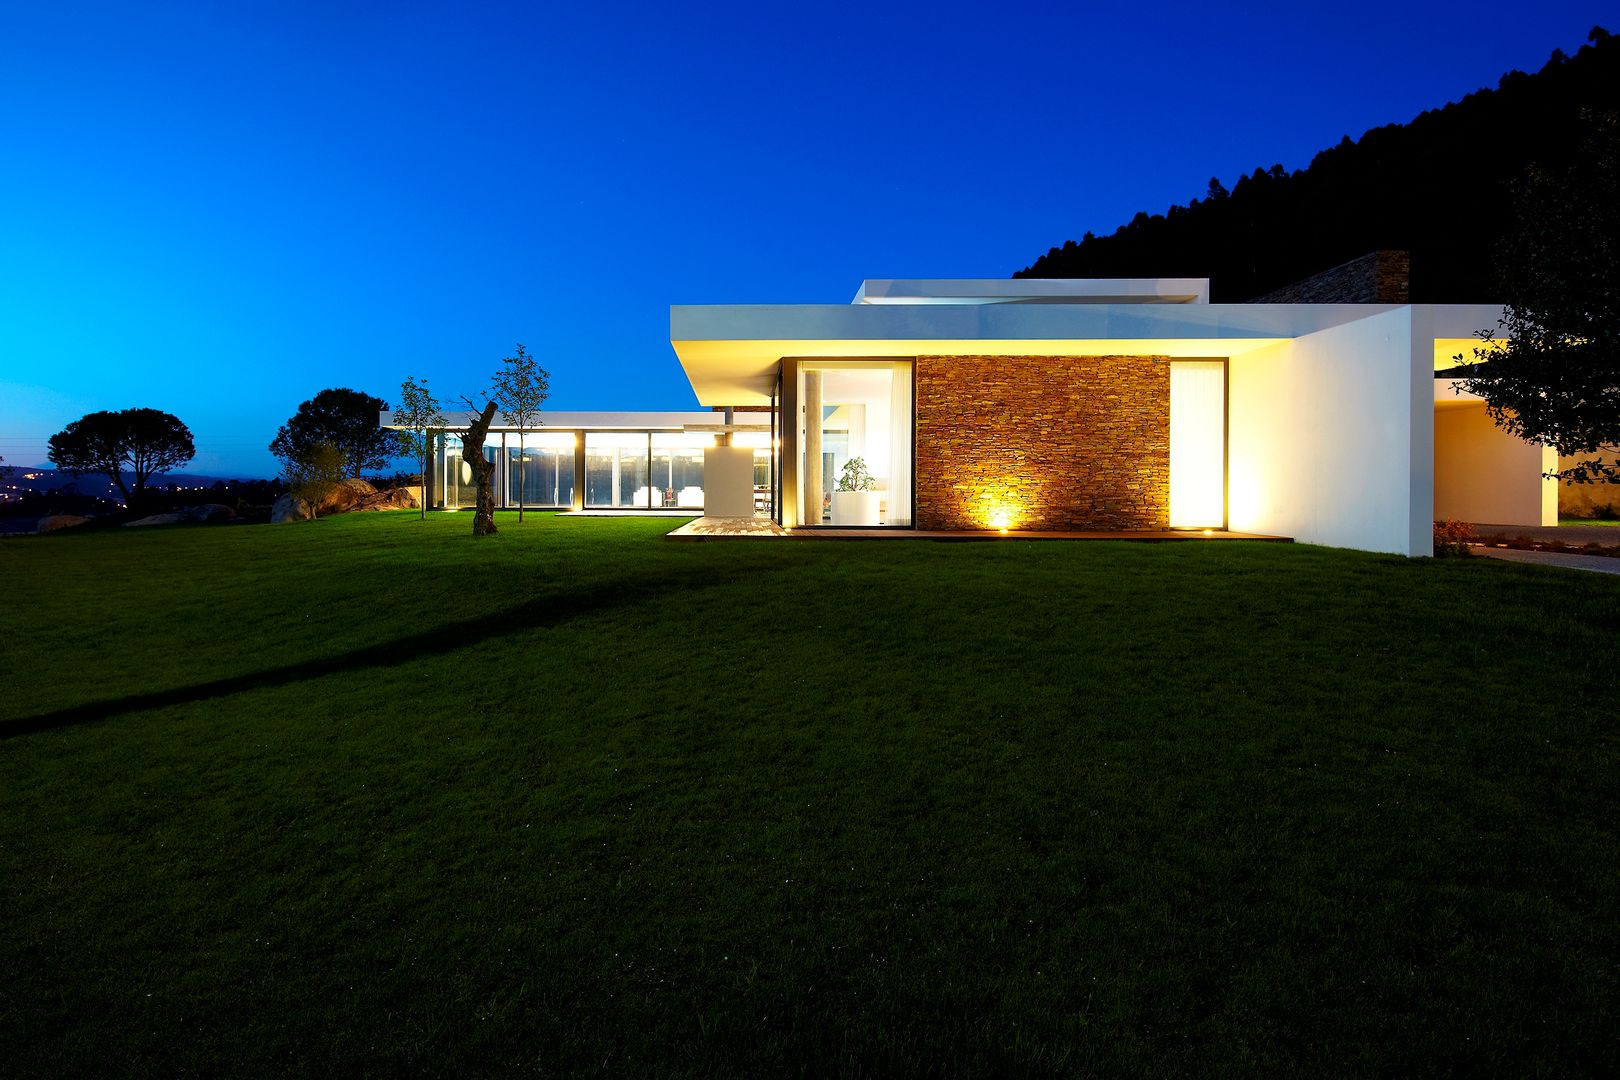 Casa moderna de dimensões generosas e piscina interior, Risco Singular - Arquitectura Lda Risco Singular - Arquitectura Lda Case in stile minimalista